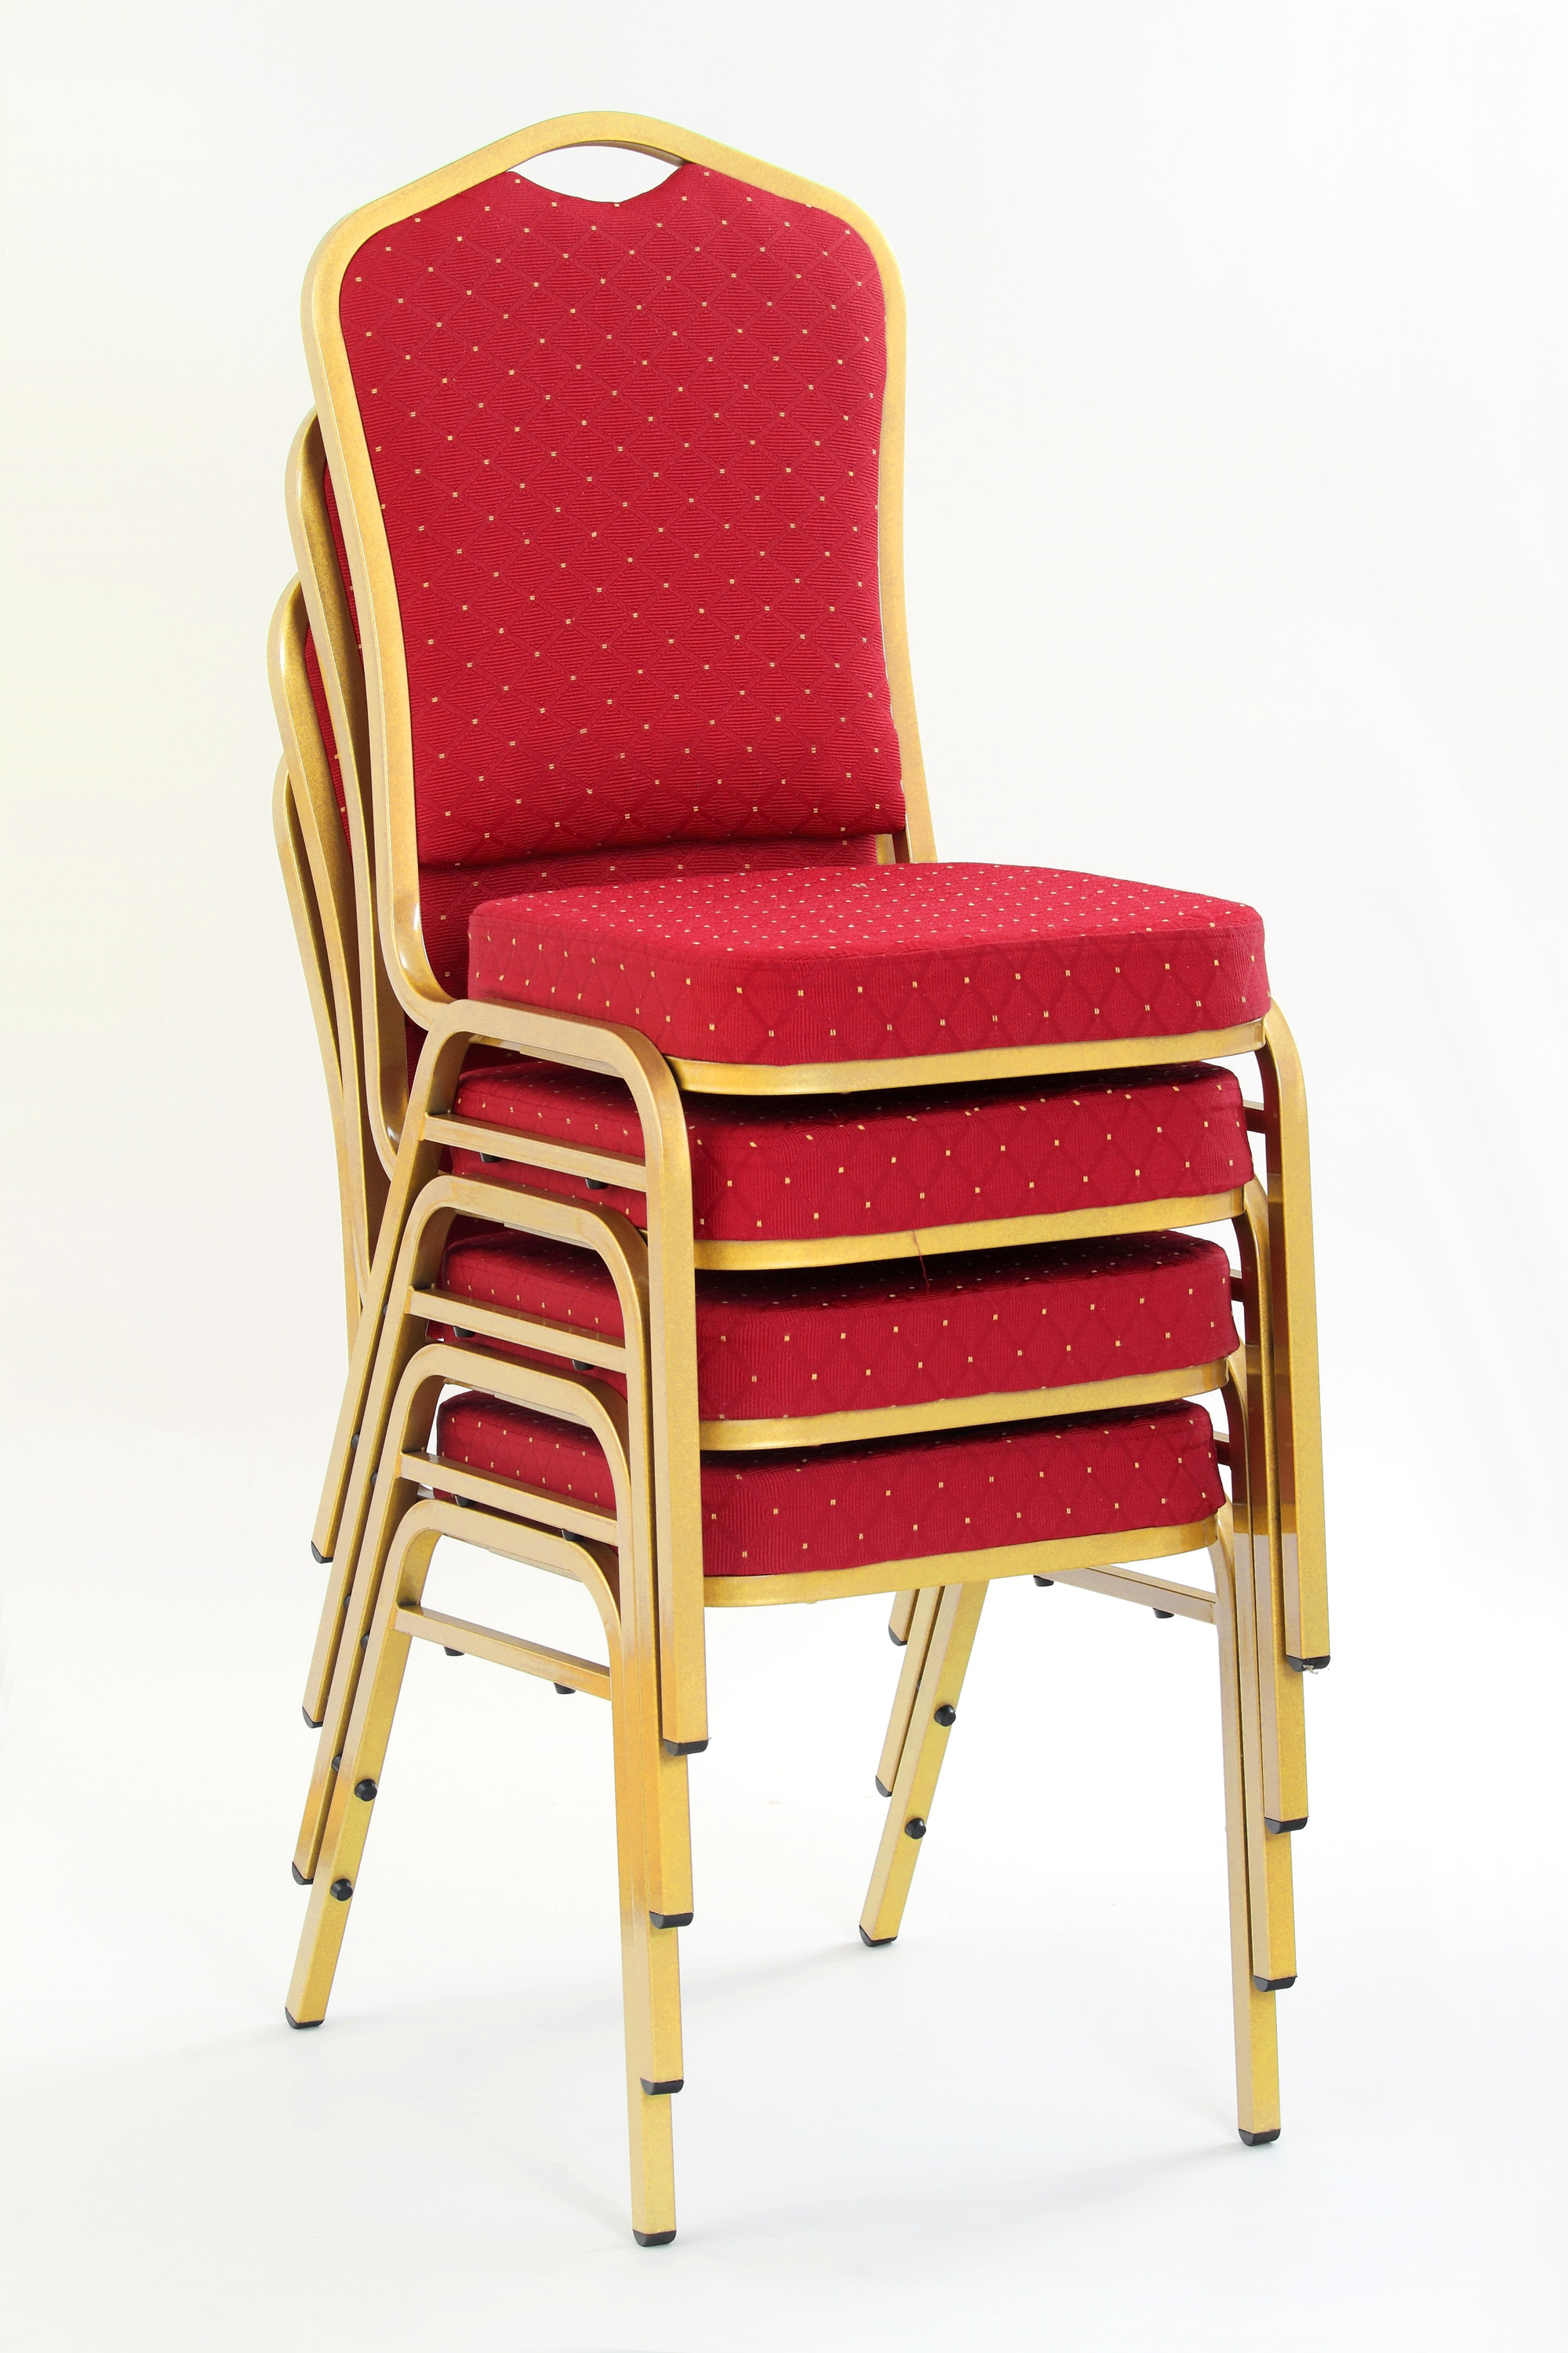 K66 krzesło bordowy, stelaż złoty k66 krzesło bordowy, stelaż złoty